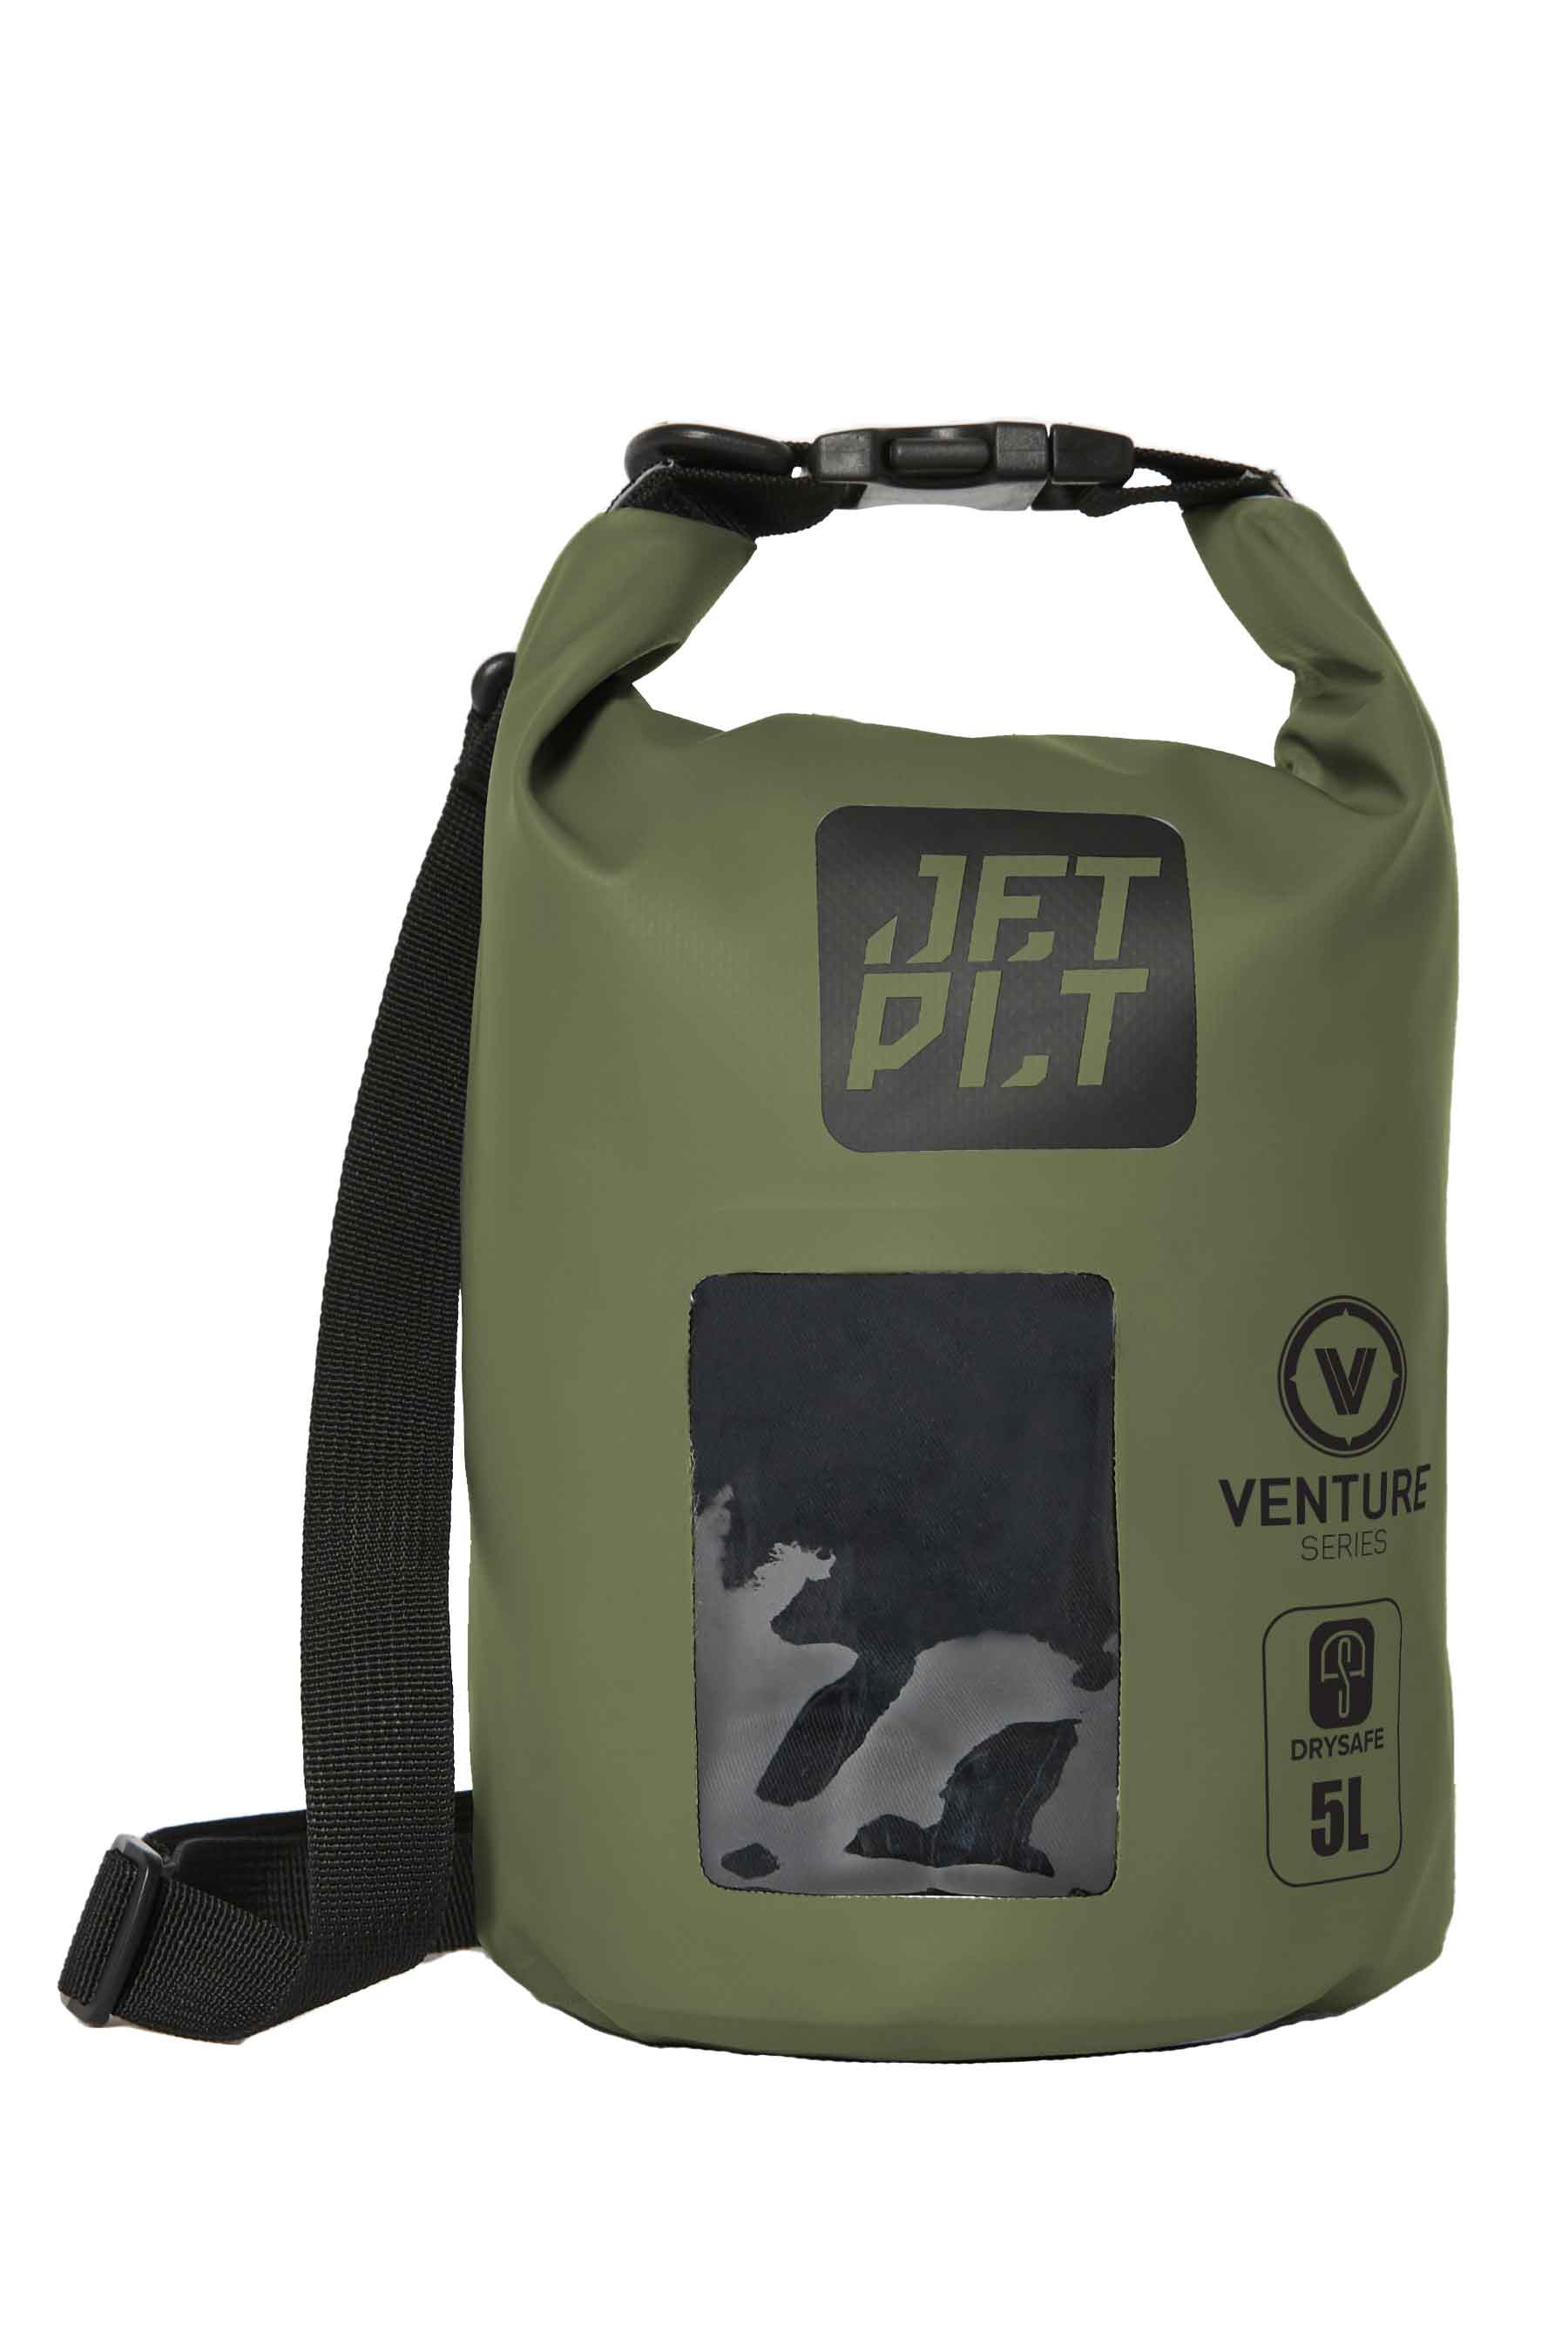 Jetpilot Venture 5l Drysafe Bag - Sage